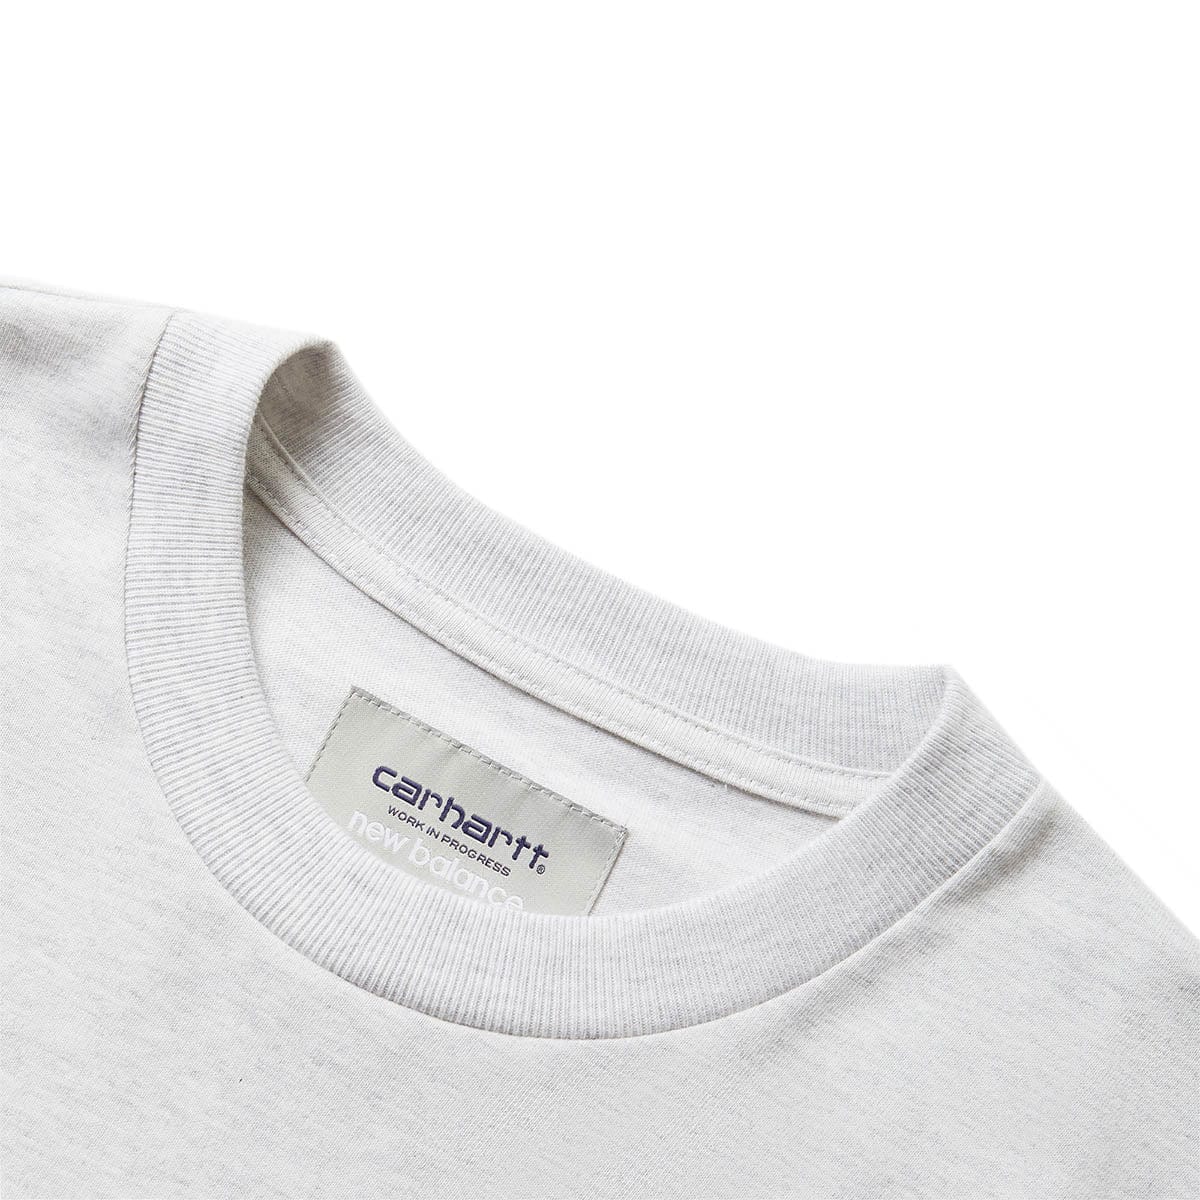 Carhartt WIP T-Shirts X NB L/S T-SHIRT